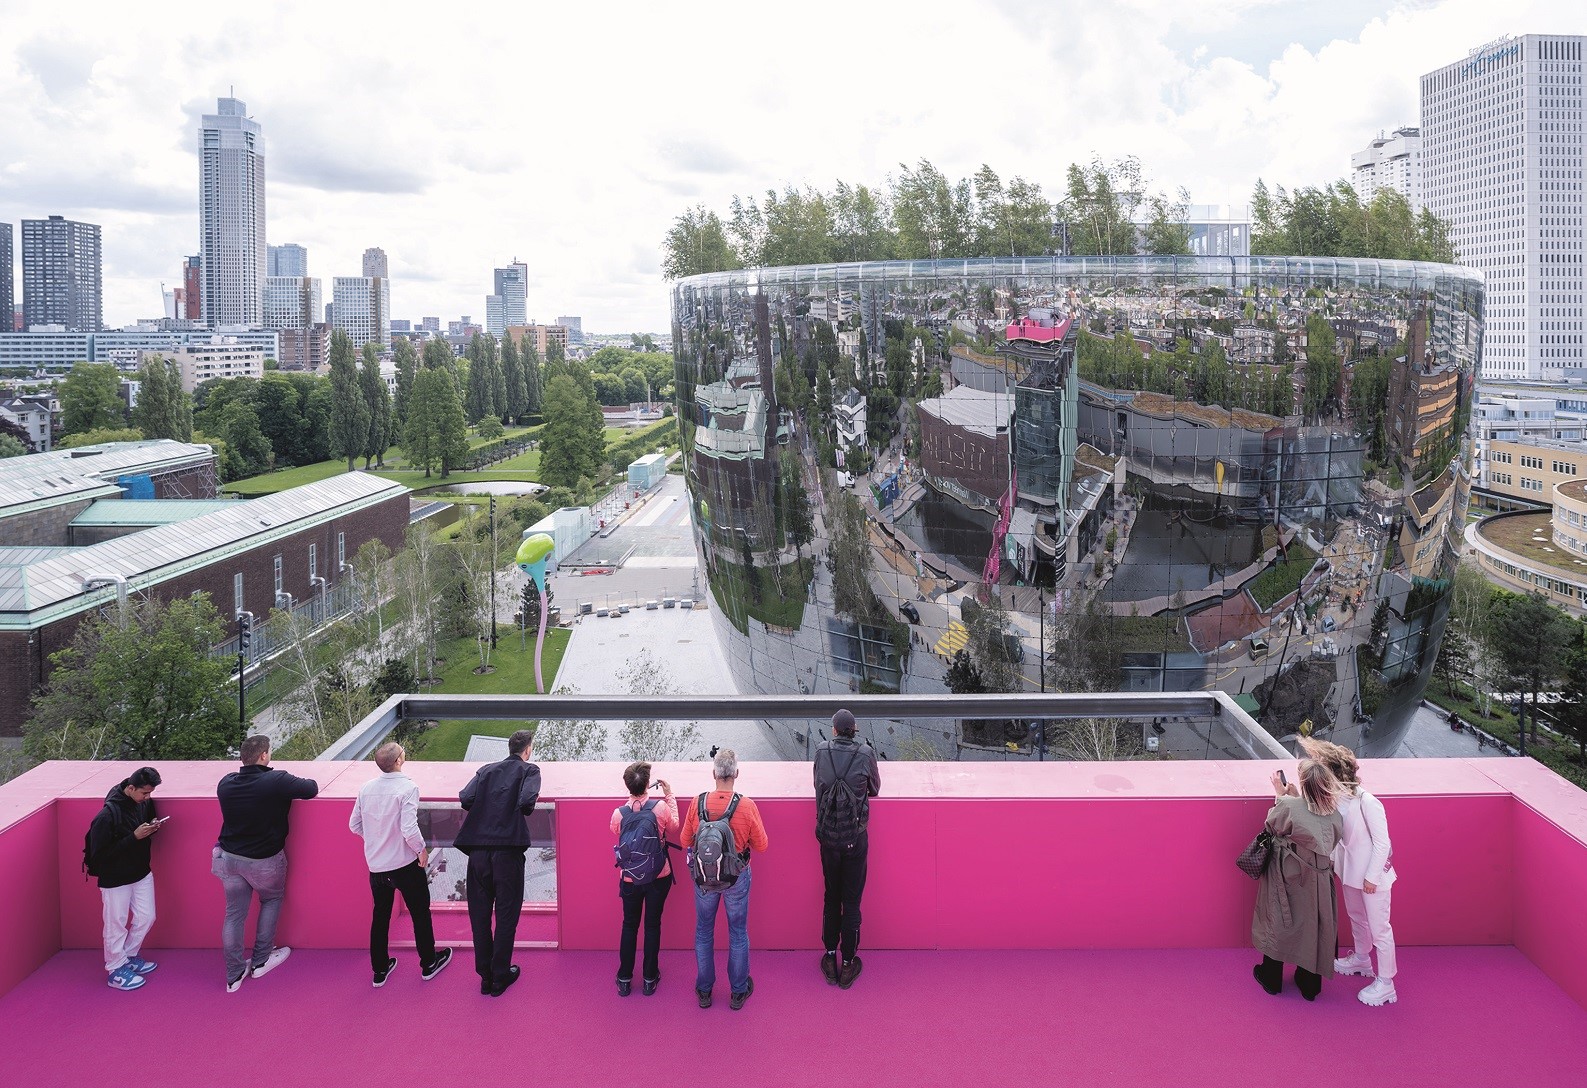 Susedné, novozrealizované pódium od ateliéru MVRDV ponúka na zrkadlovú fasádu Depotu pohľad z výšky a rozširuje výhľady na celý Rotterdam.